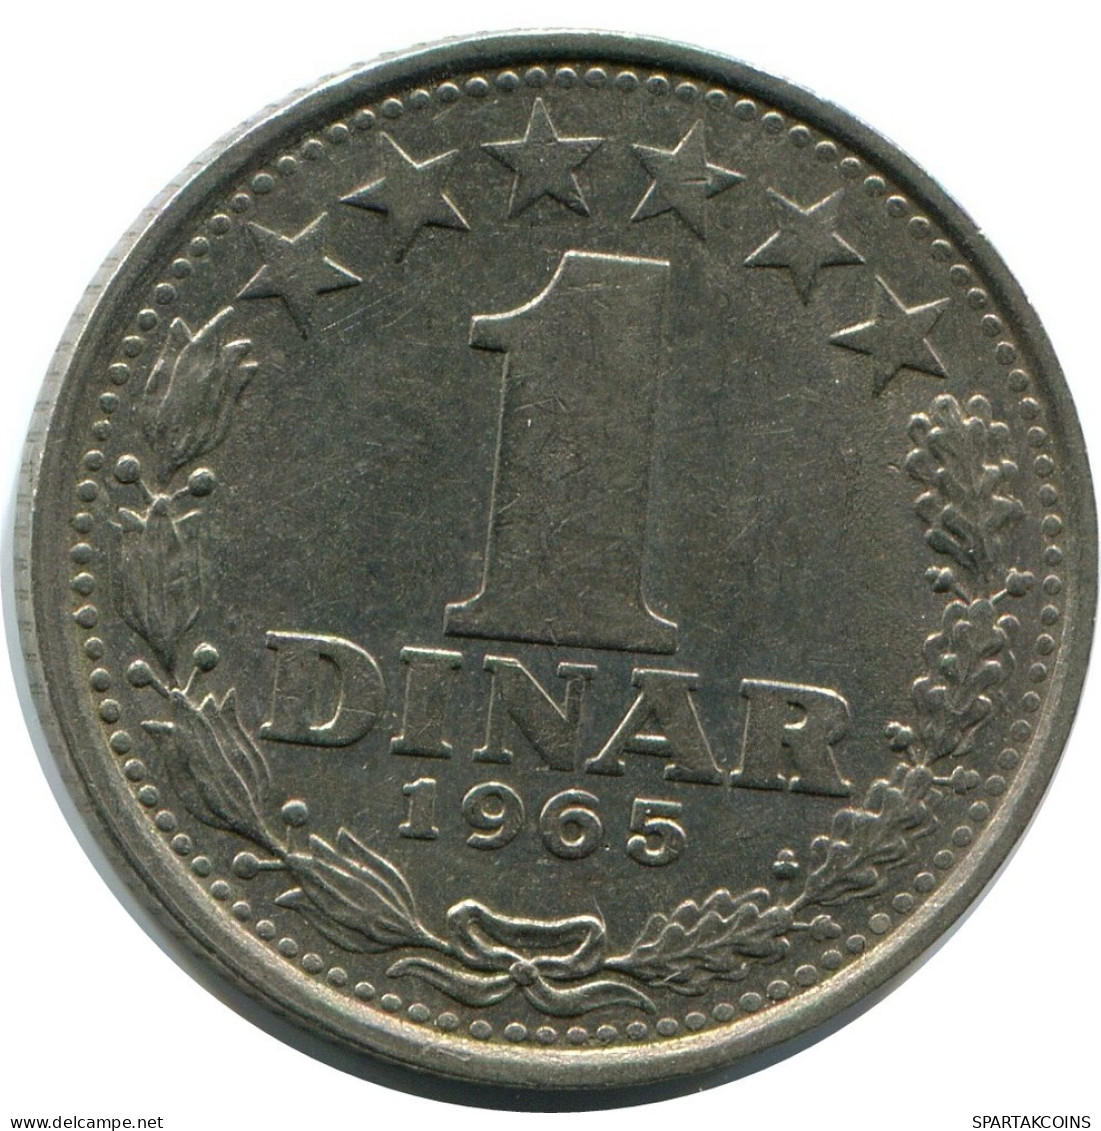 1 DINAR 1965 YUGOSLAVIA Coin #AZ589.U.A - Yougoslavie